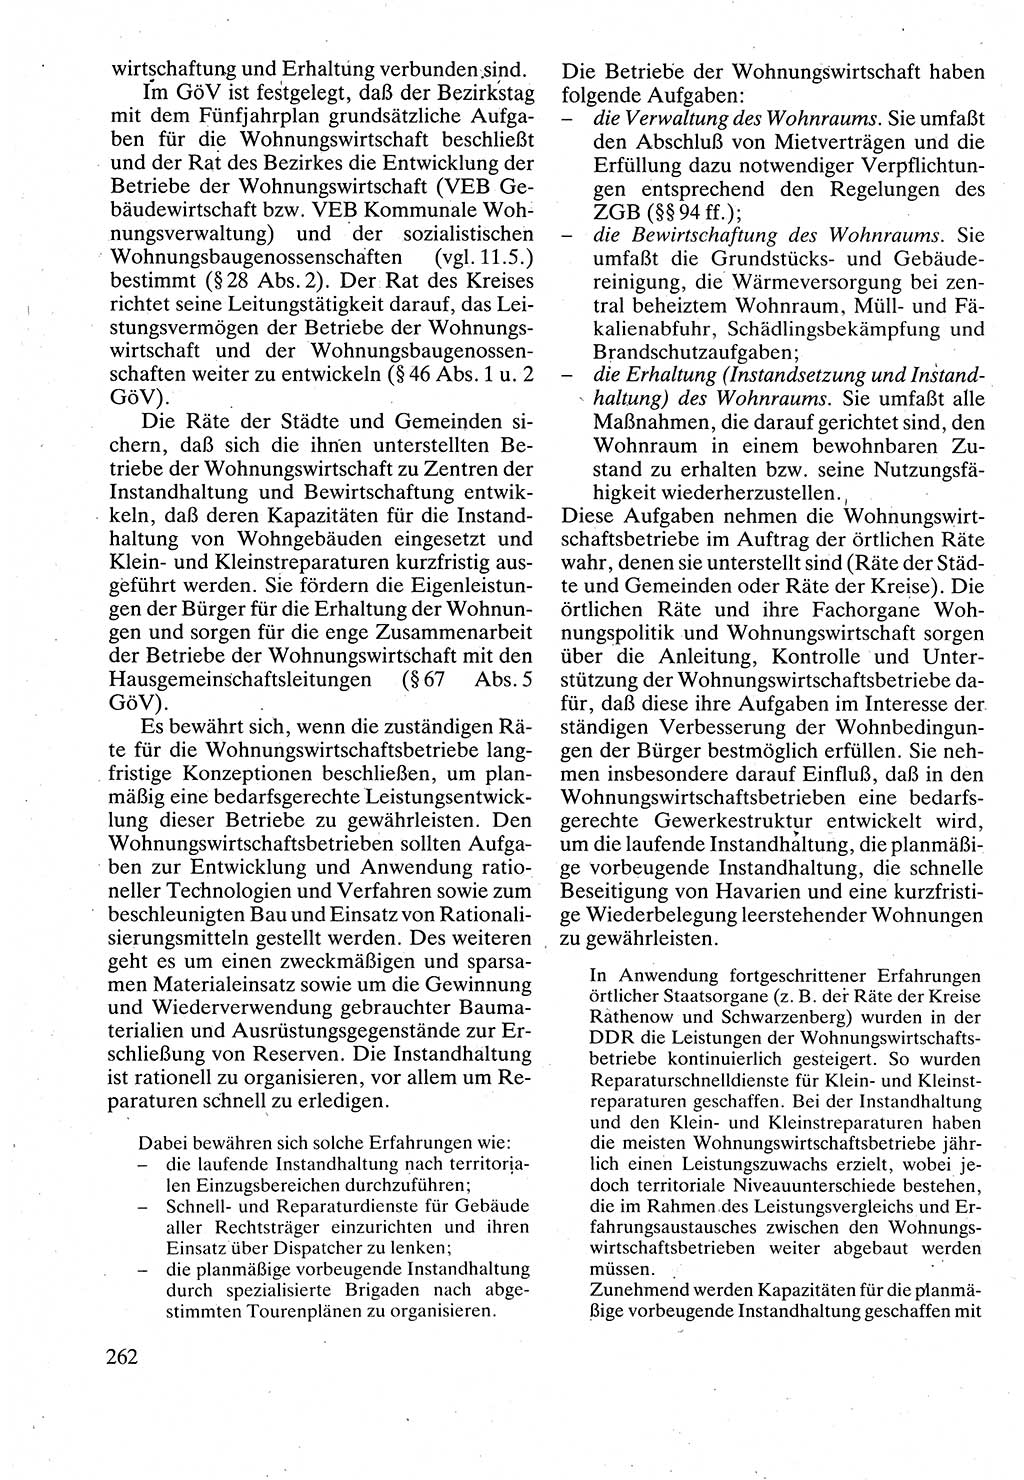 Verwaltungsrecht [Deutsche Demokratische Republik (DDR)], Lehrbuch 1988, Seite 262 (Verw.-R. DDR Lb. 1988, S. 262)